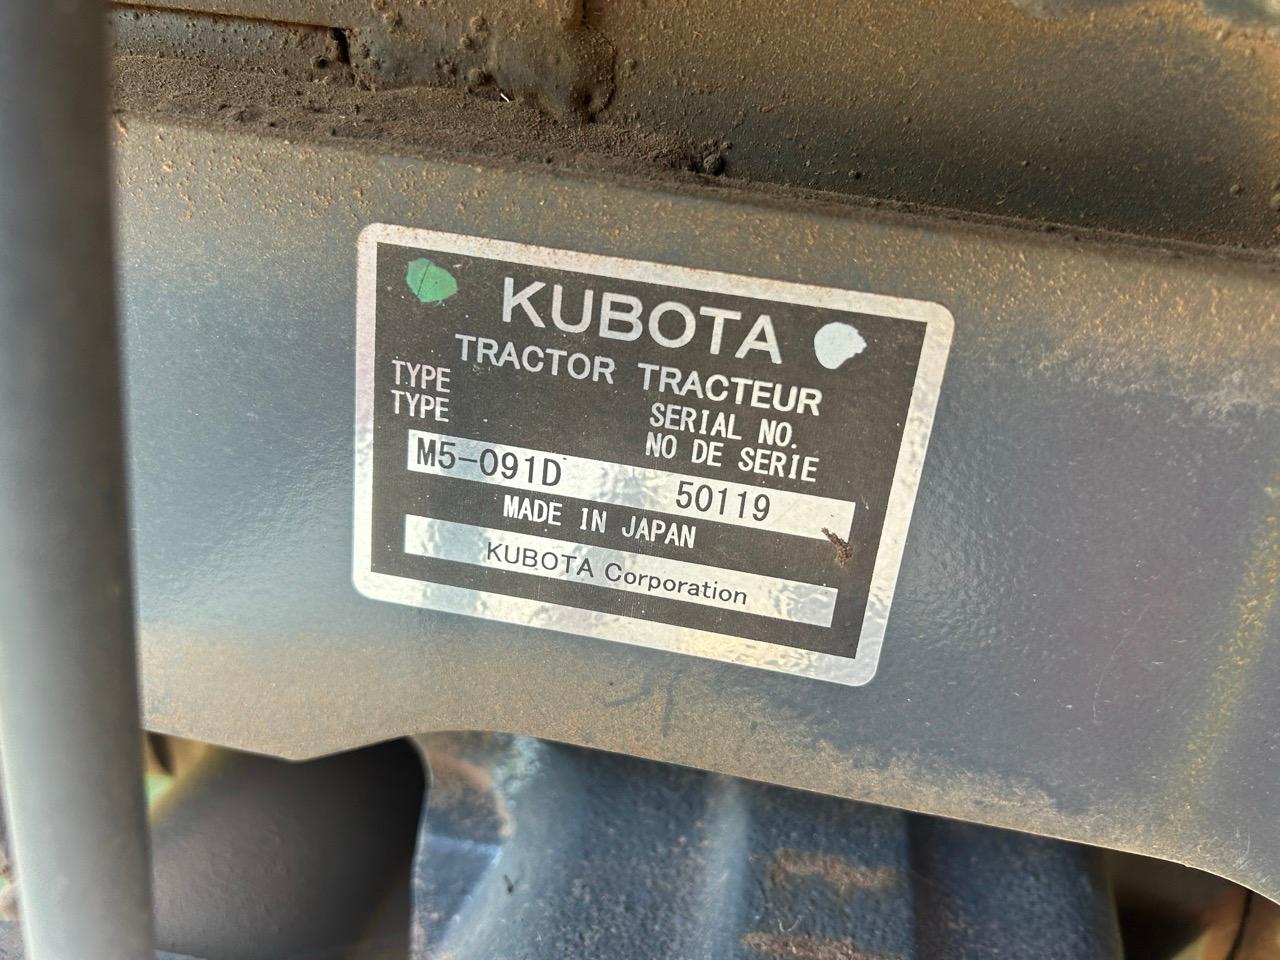 Kubota M5-091